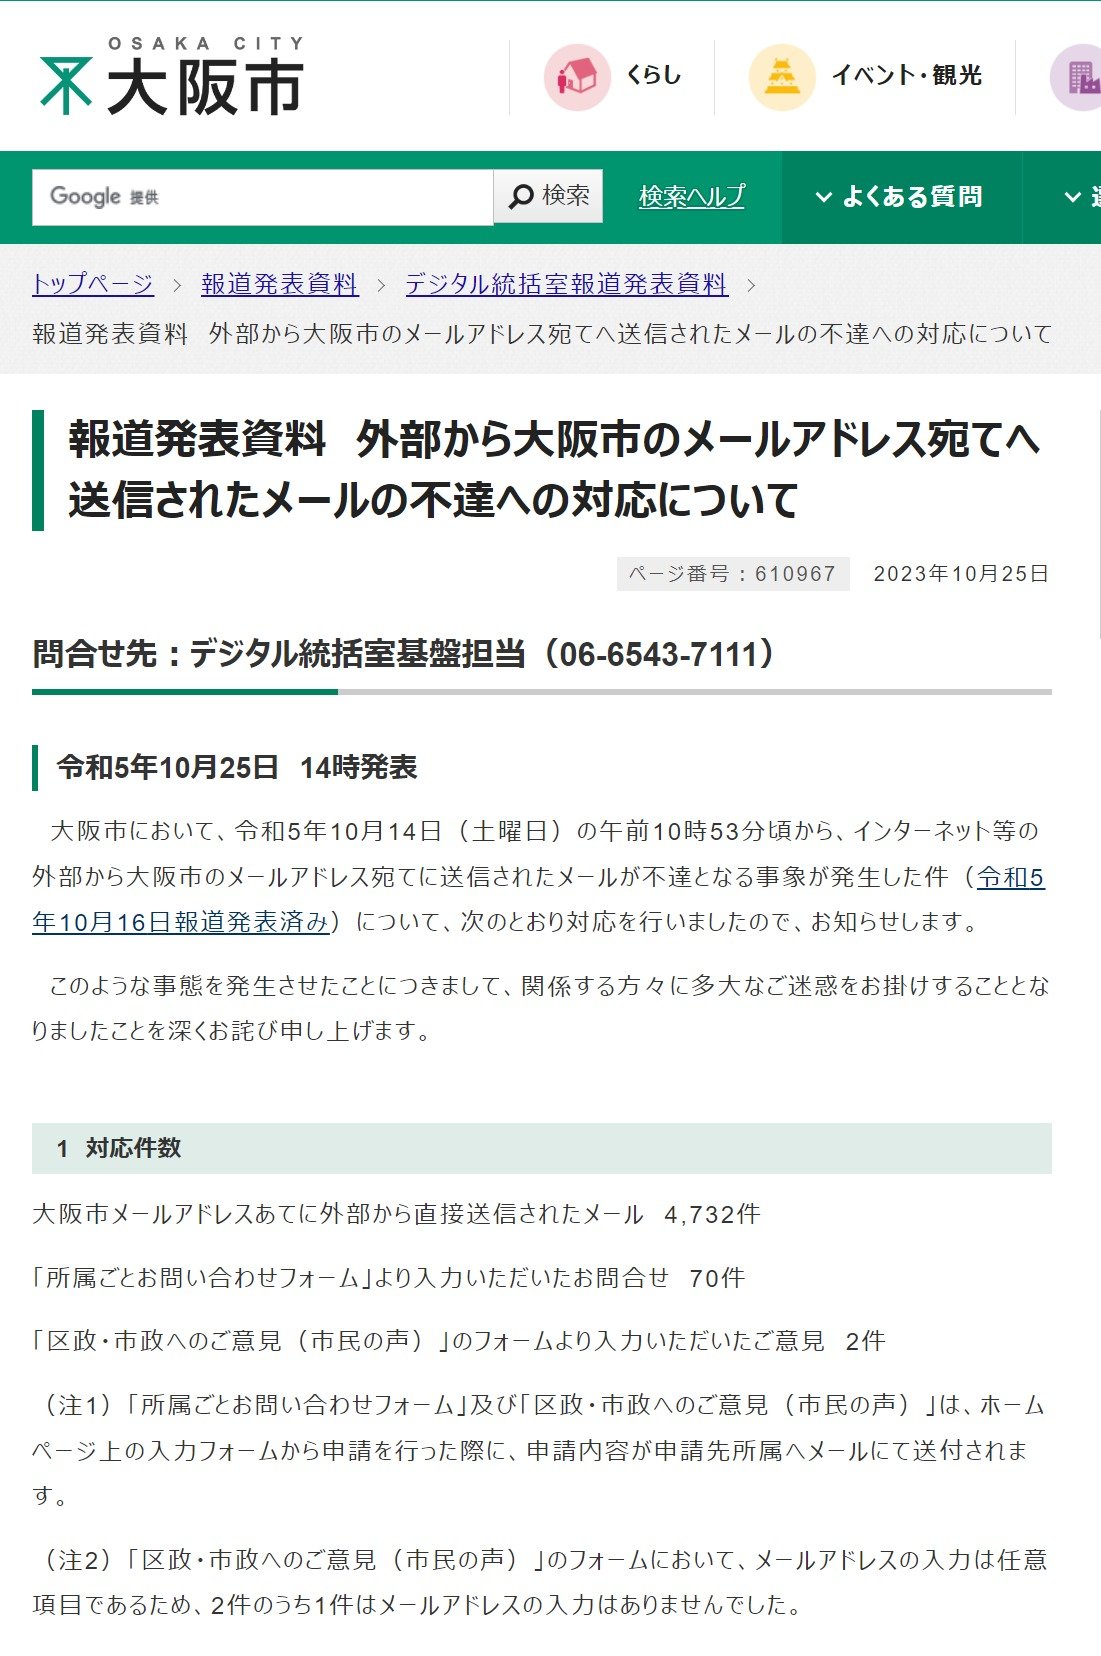 大阪市にメール届かない問題、「メールシステムのセキュリティ過剰反応」が原因